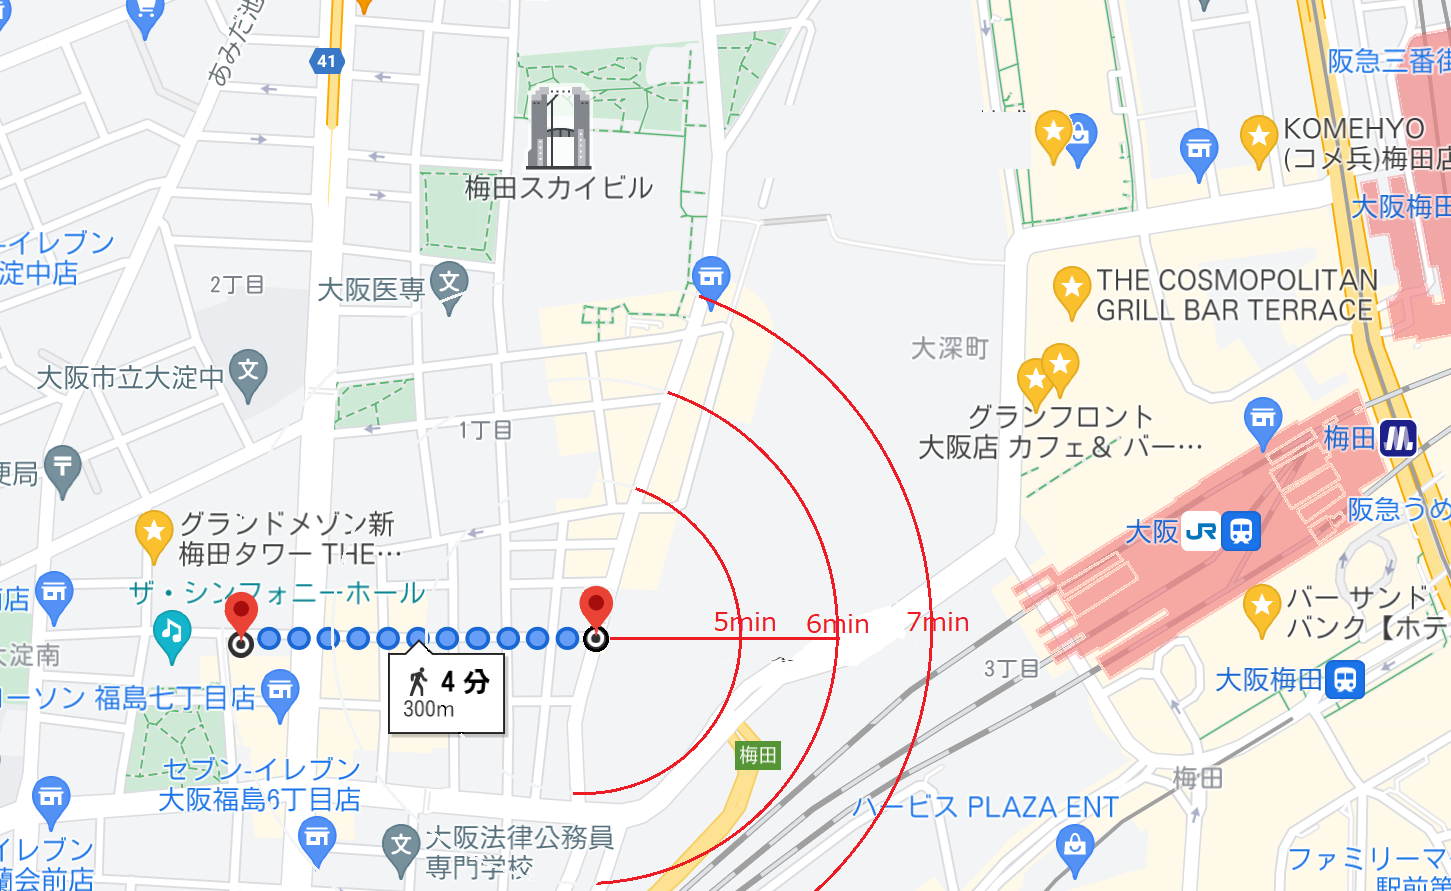 大阪駅までの距離、色々な変動要因がありま...